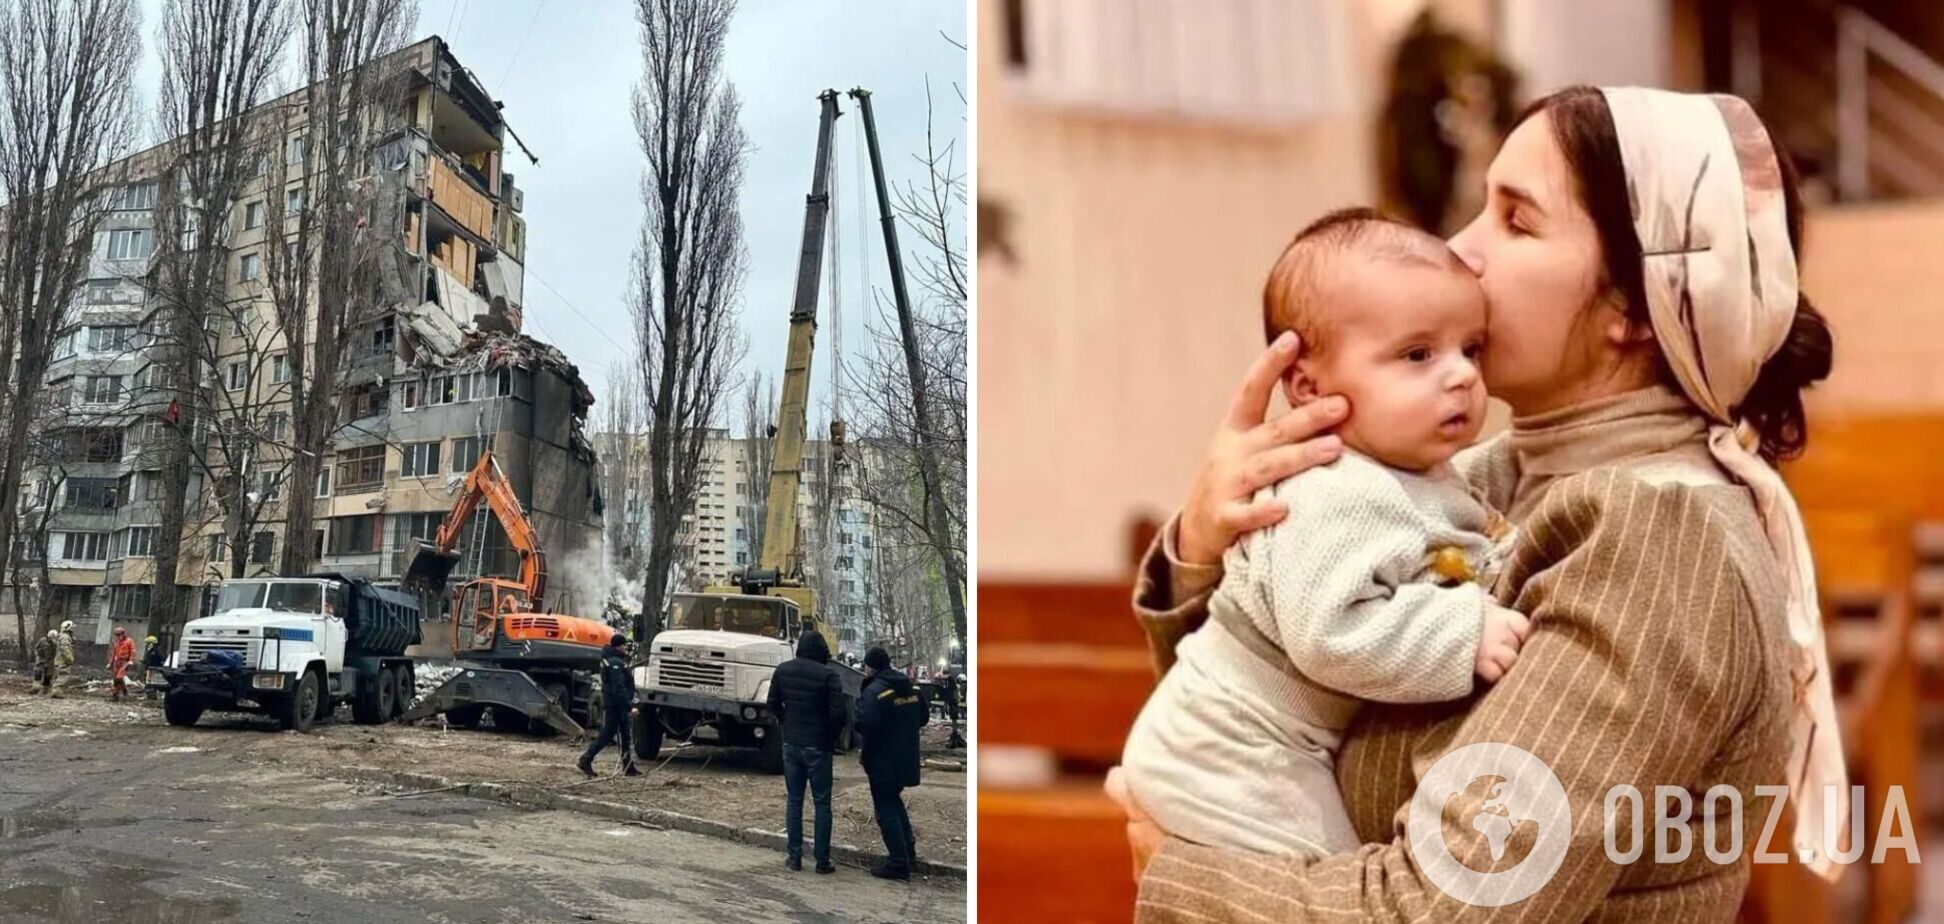 В Одессе прощаются с женщиной с младенцем, погибшими от атаки РФ: во время траурной церемонии враг снова ударил по городу. Видео